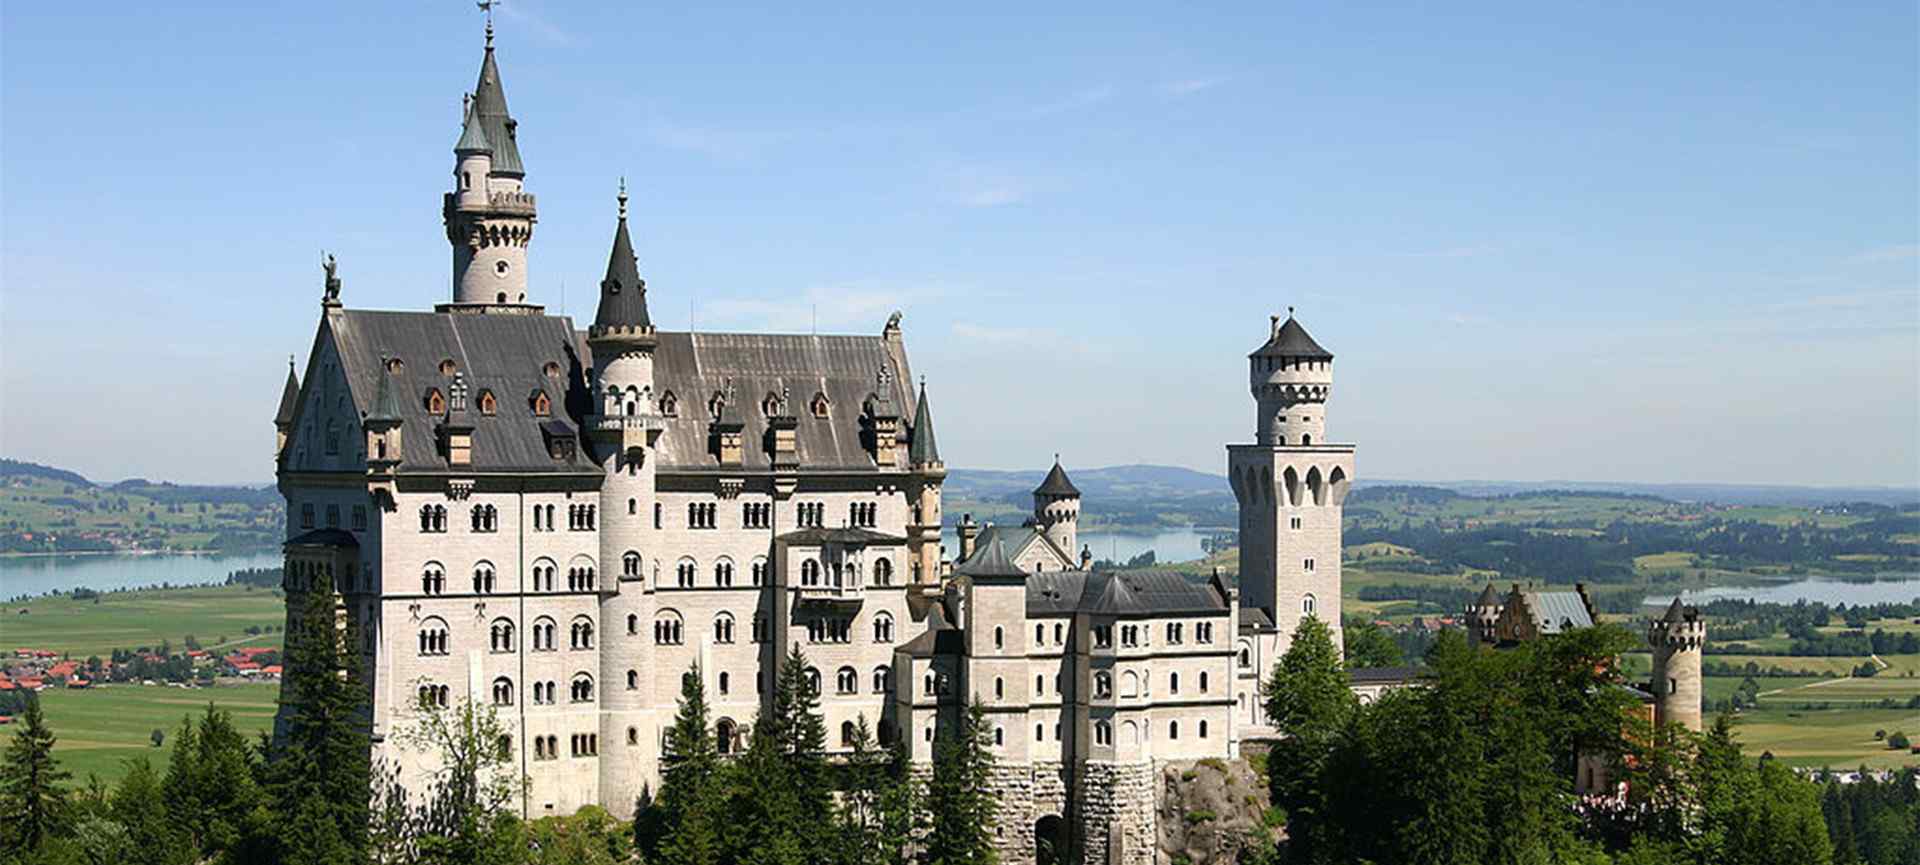 城堡_童话城堡_城堡图片_魔法城堡_城堡壁纸_欧洲城堡